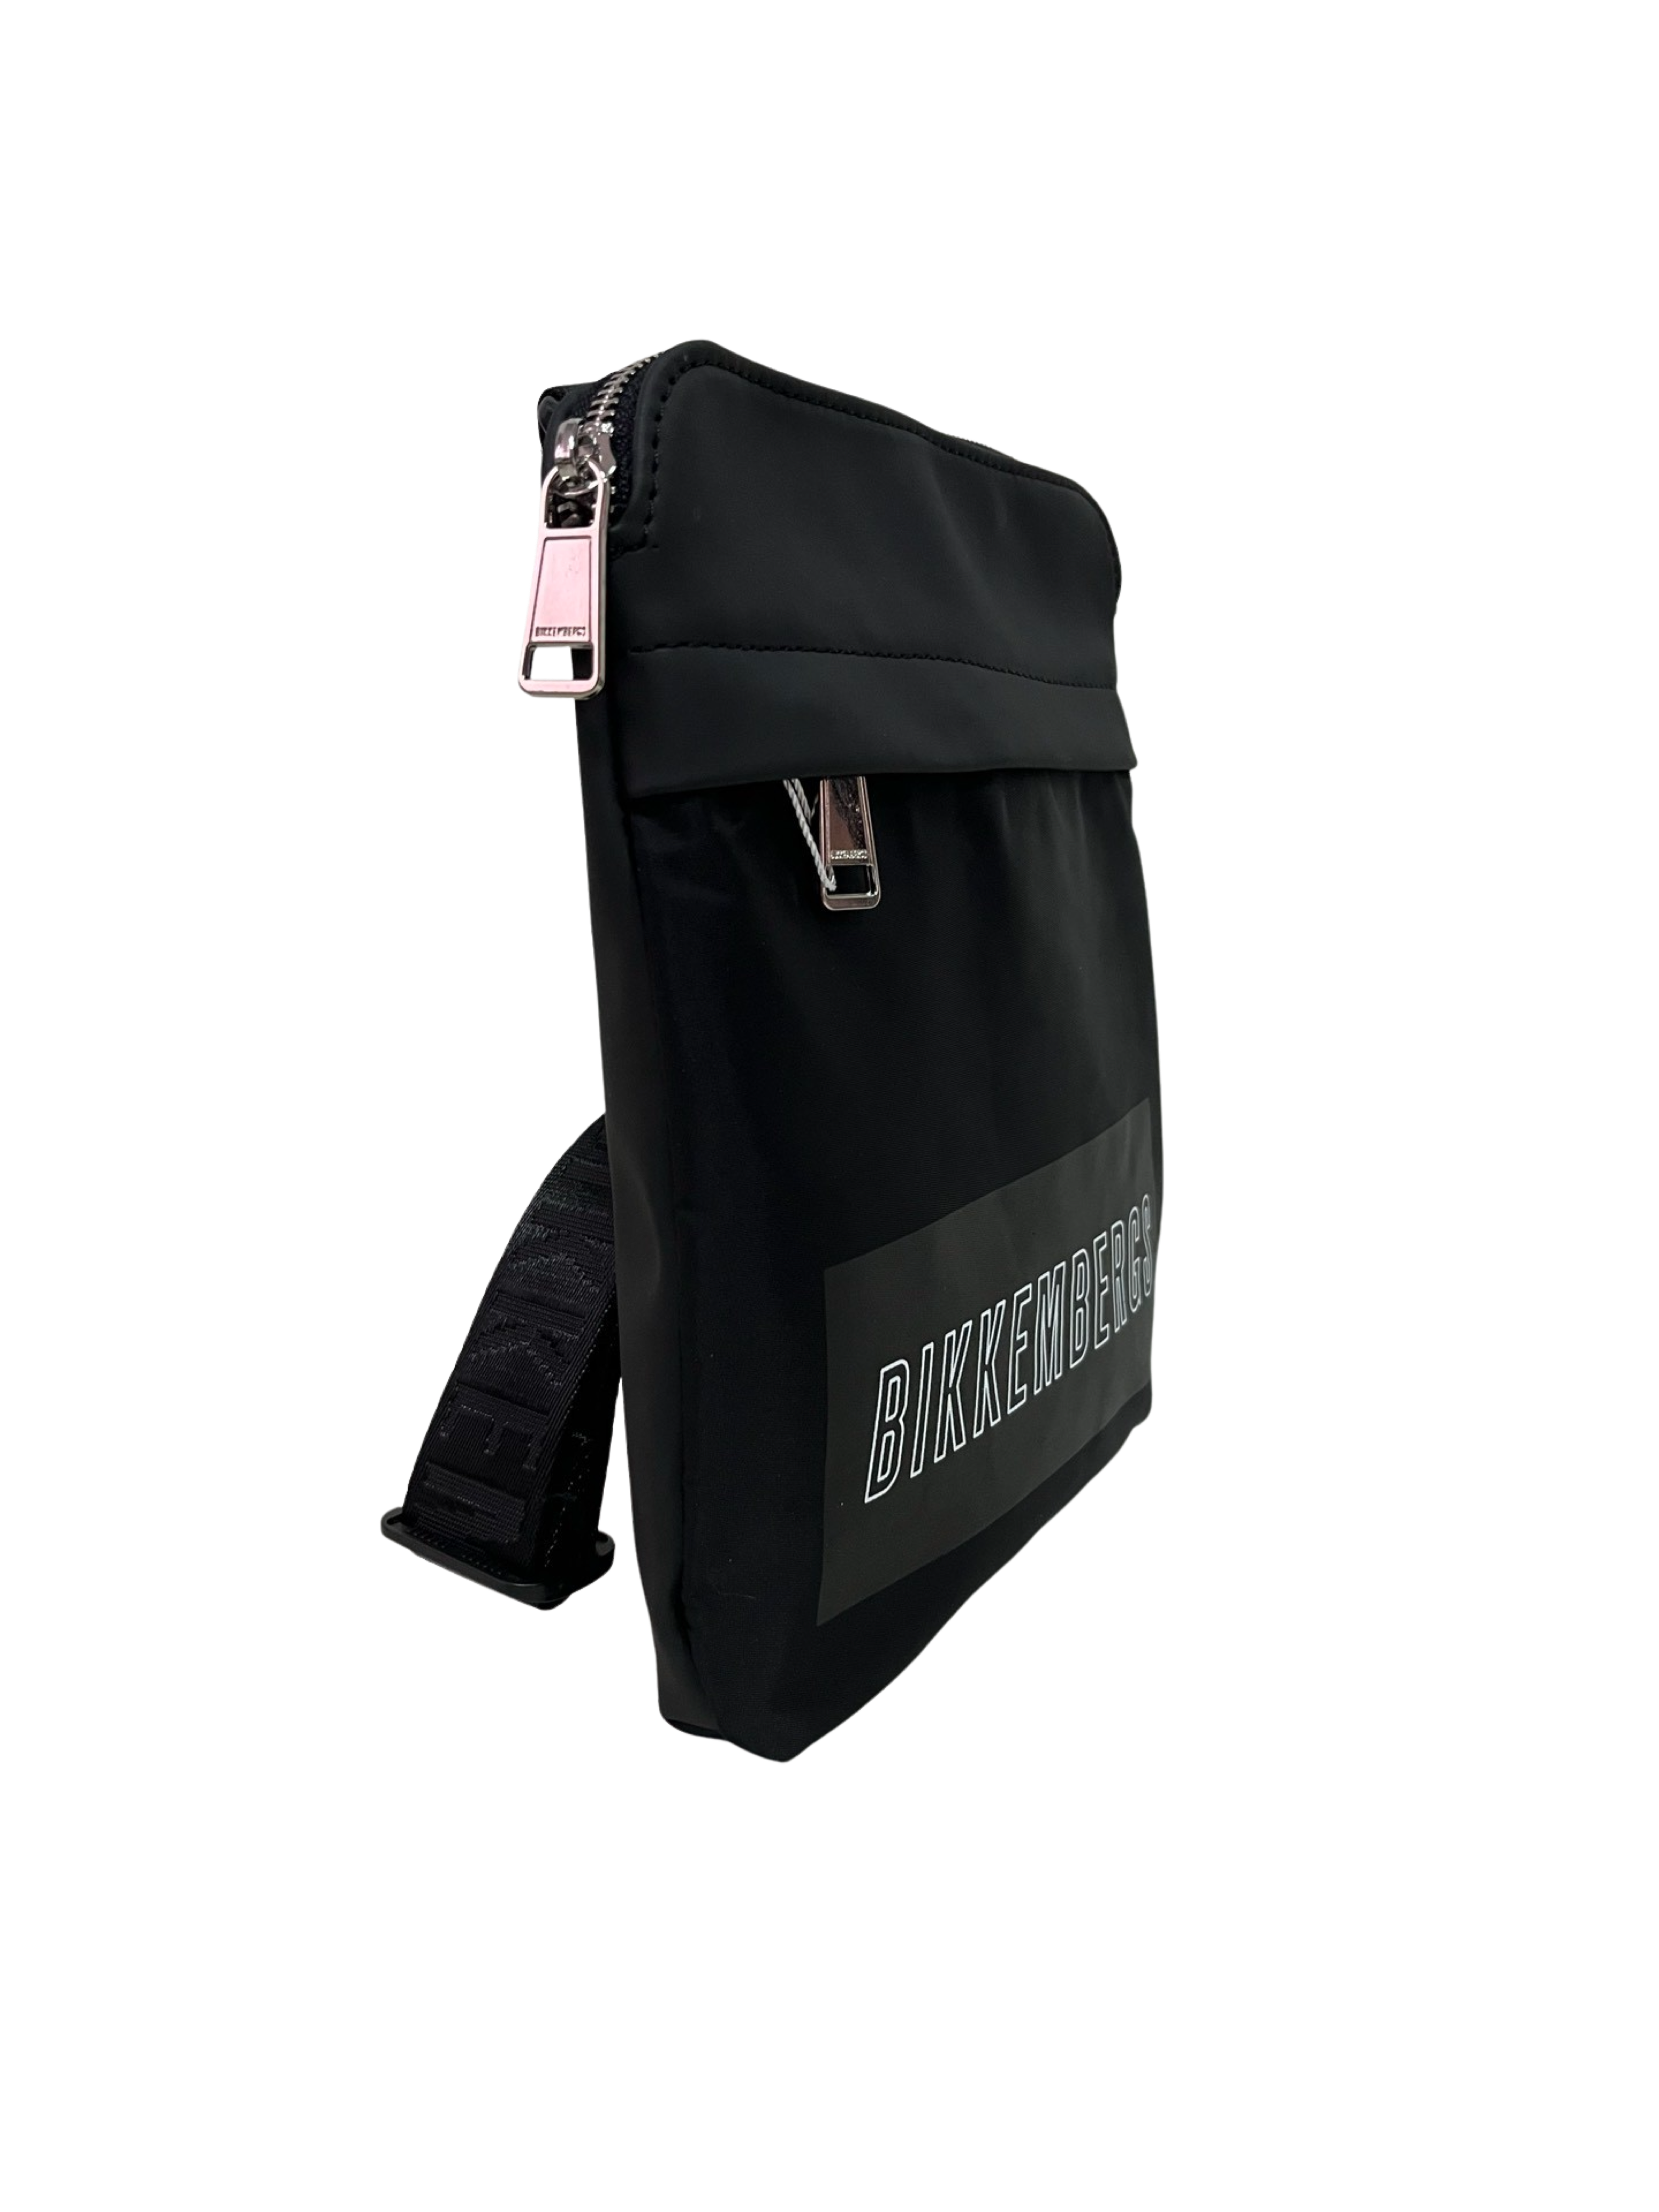 Bikkembergs Crossbody Bag